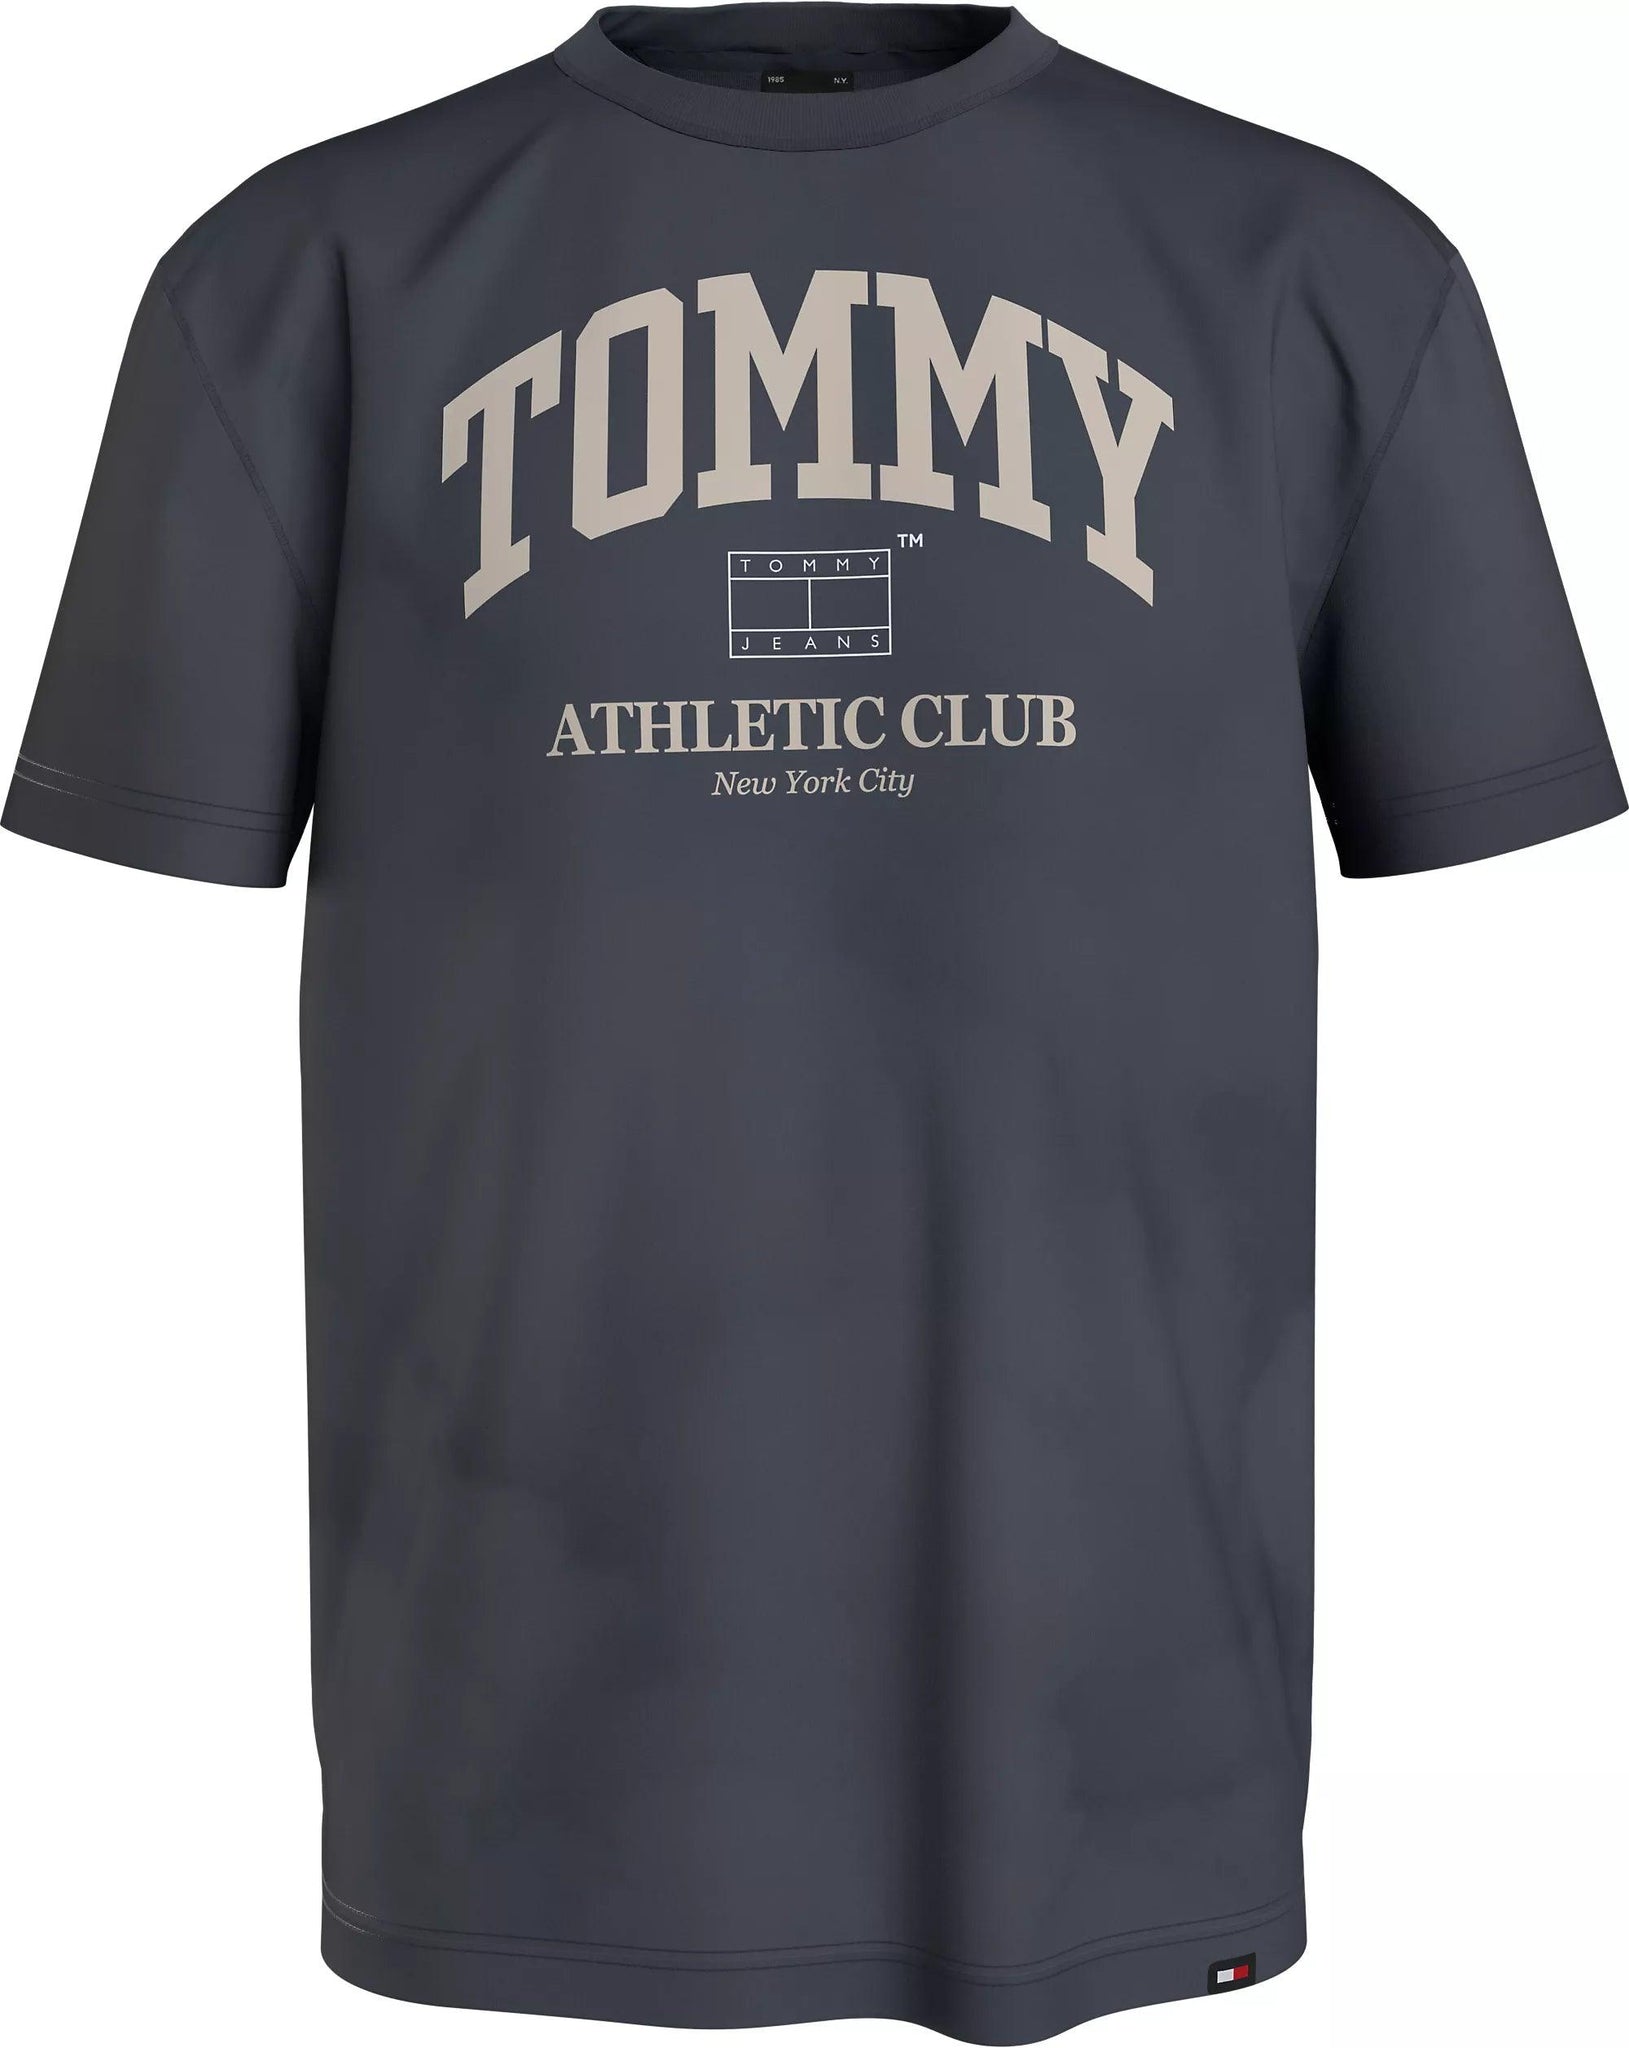 Camiseta Tommy Jeans Athletic Club - ECRU